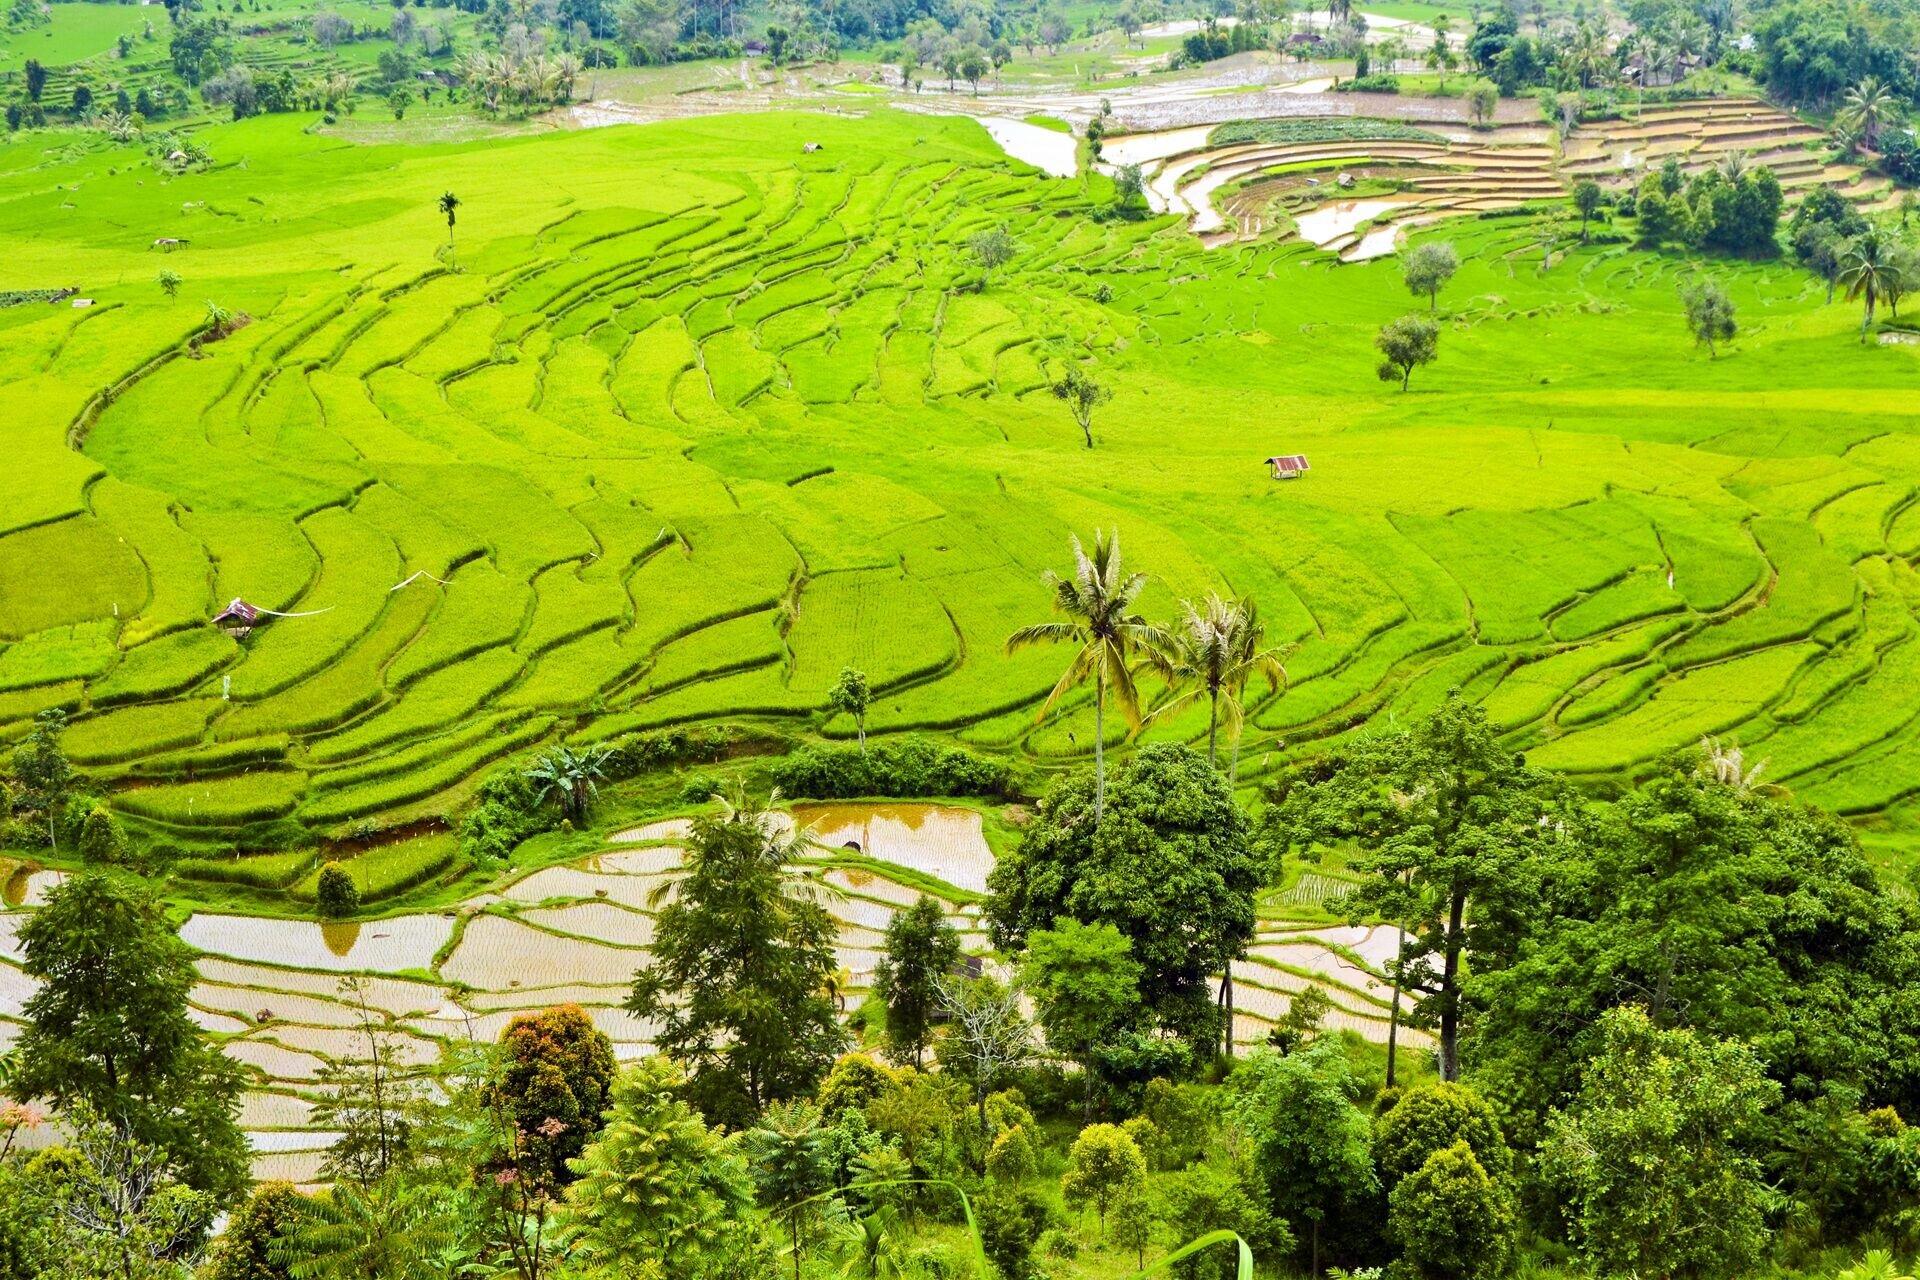 viaggi-indonesia-bali-terrazze-coltivate-a-riso-wadidestination.jpg